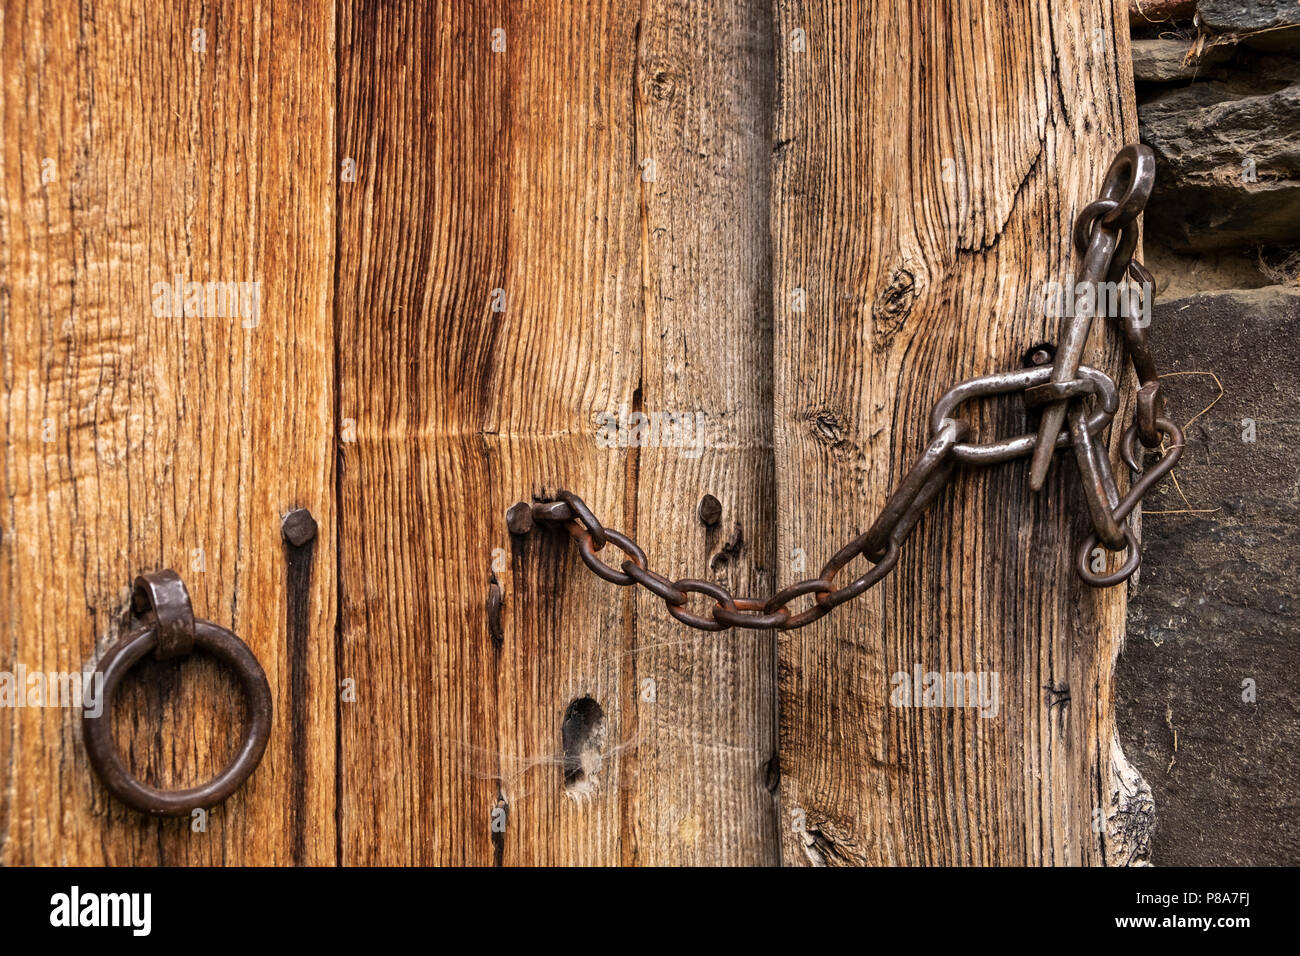 Dettaglio close up della maniglia della porta e il lucchetto della catena su una vecchia fattoria in Liebro, Catalogna, Spagna Foto Stock